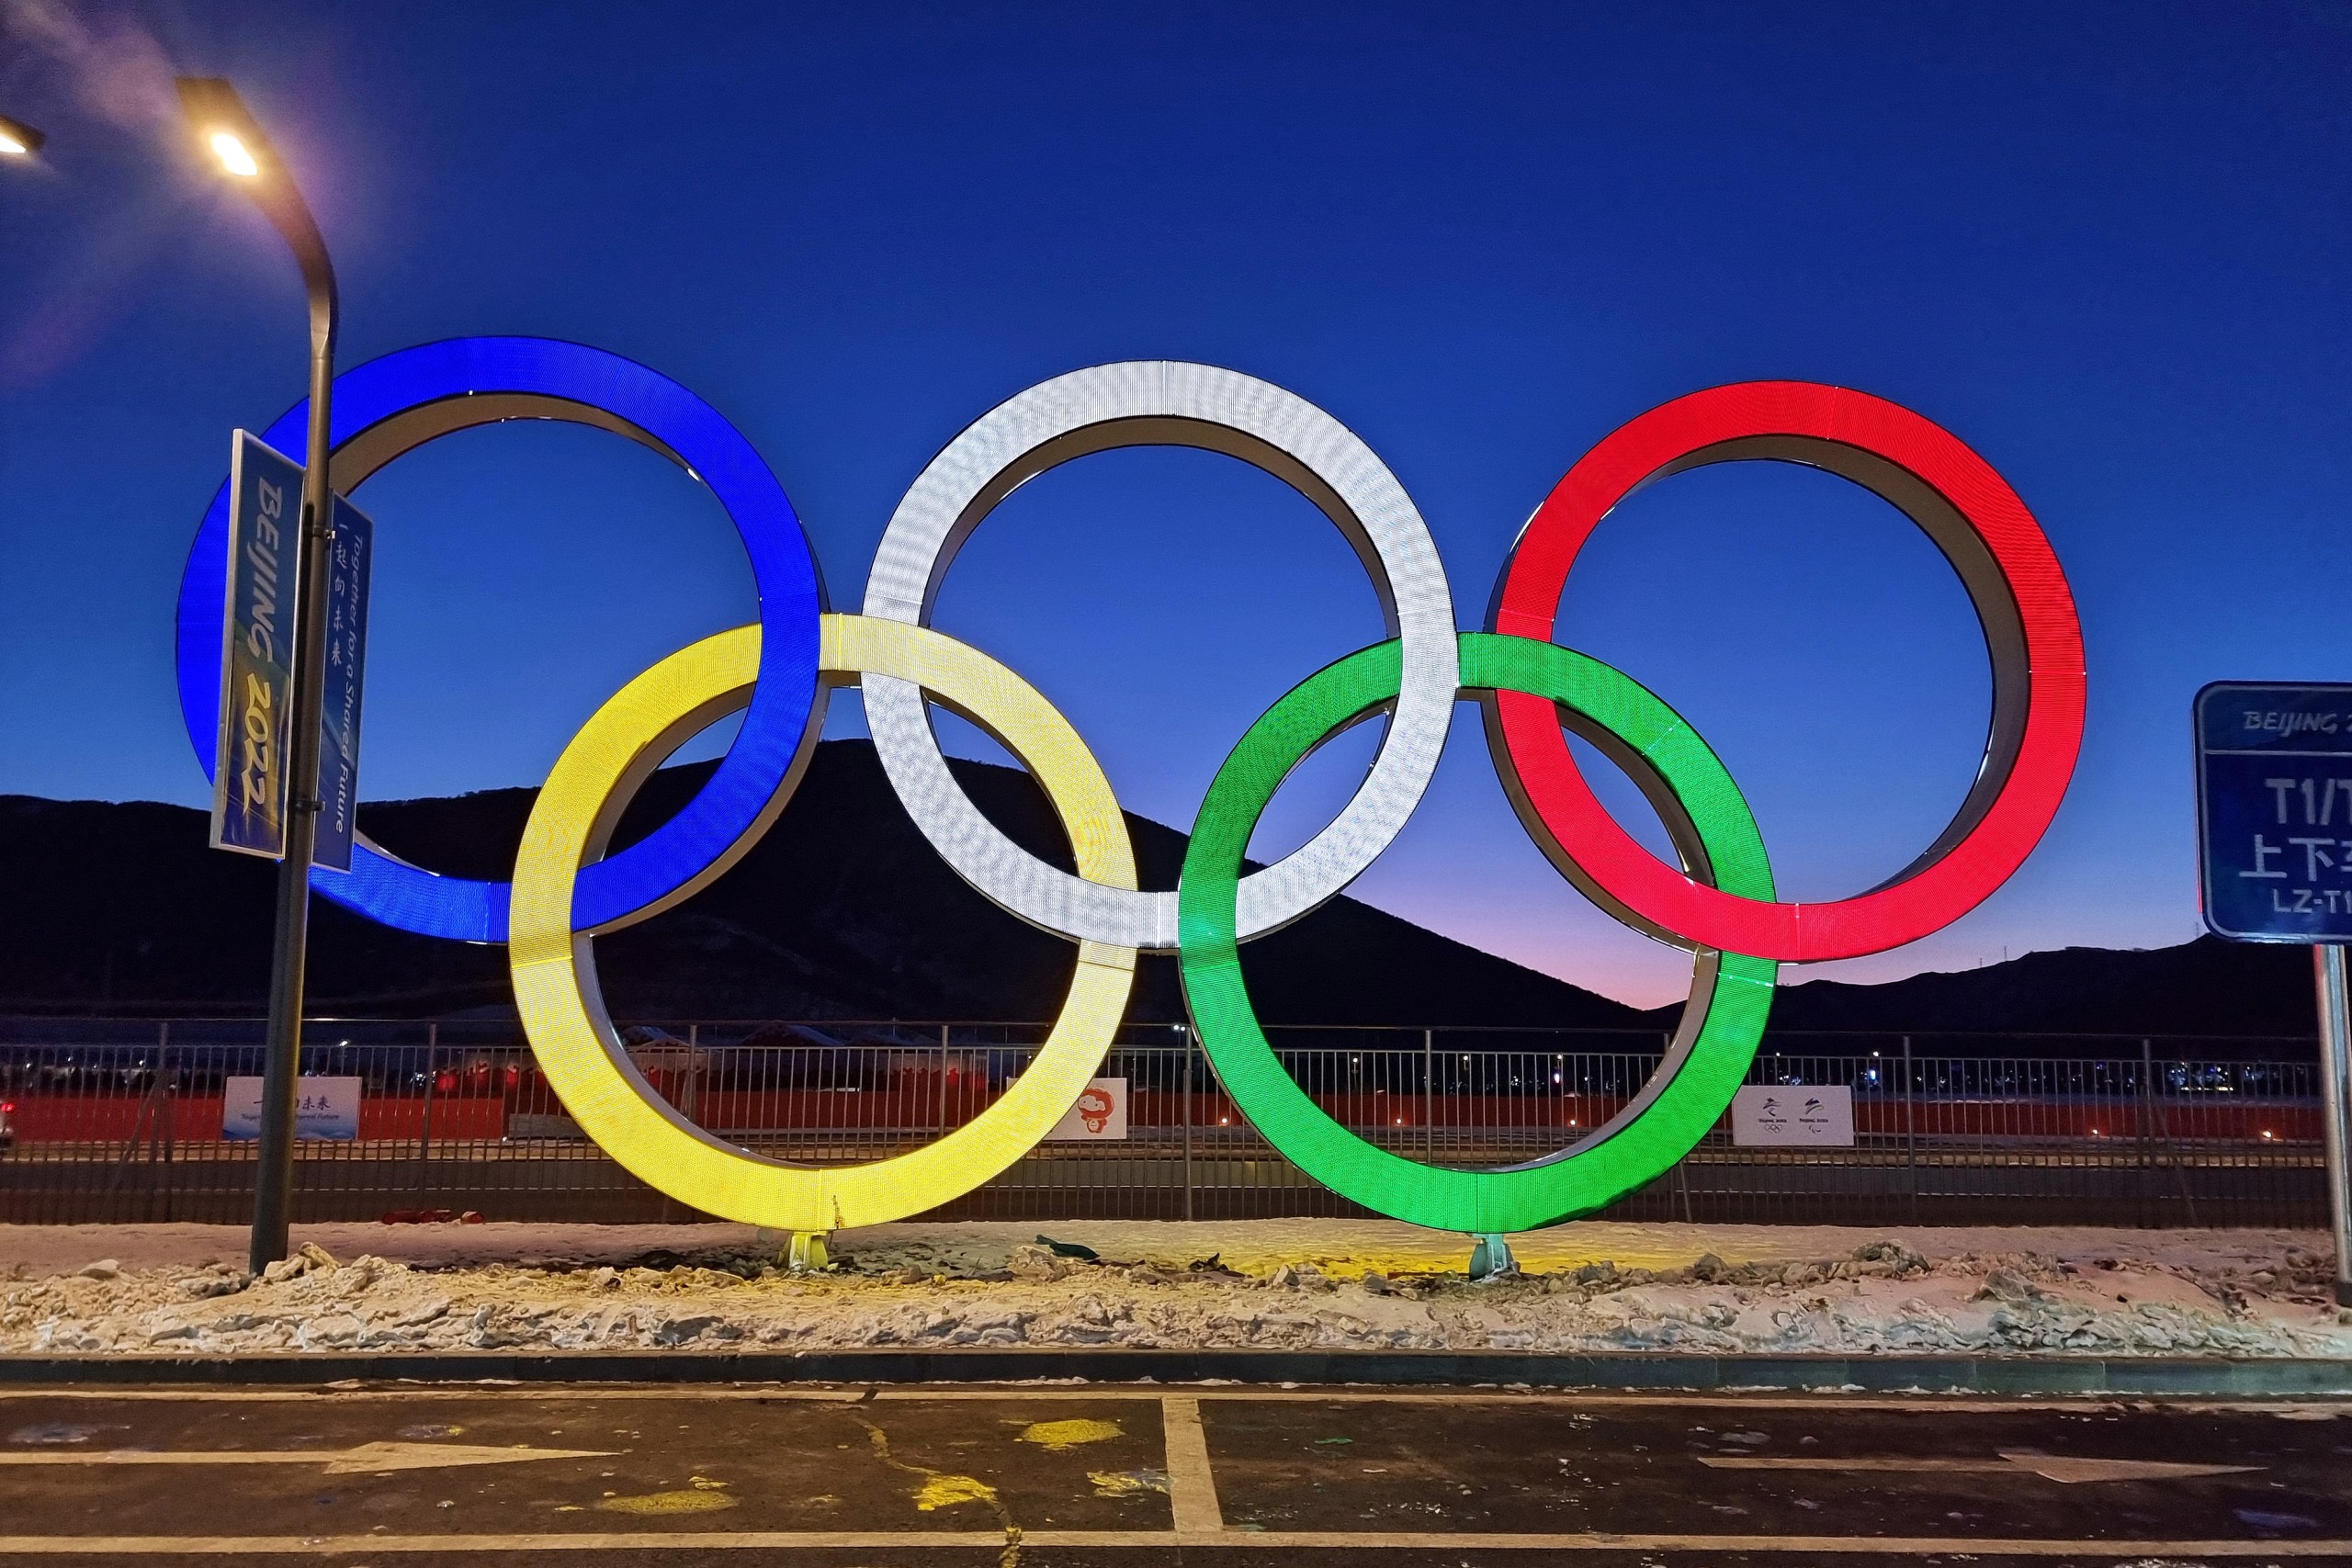 Peking, 04.02.2022 - Olimpijski krugovi u Olimpijskom selu u Pekingu (Beijing Olympic Village).
foto HINA/ HOO/ ds